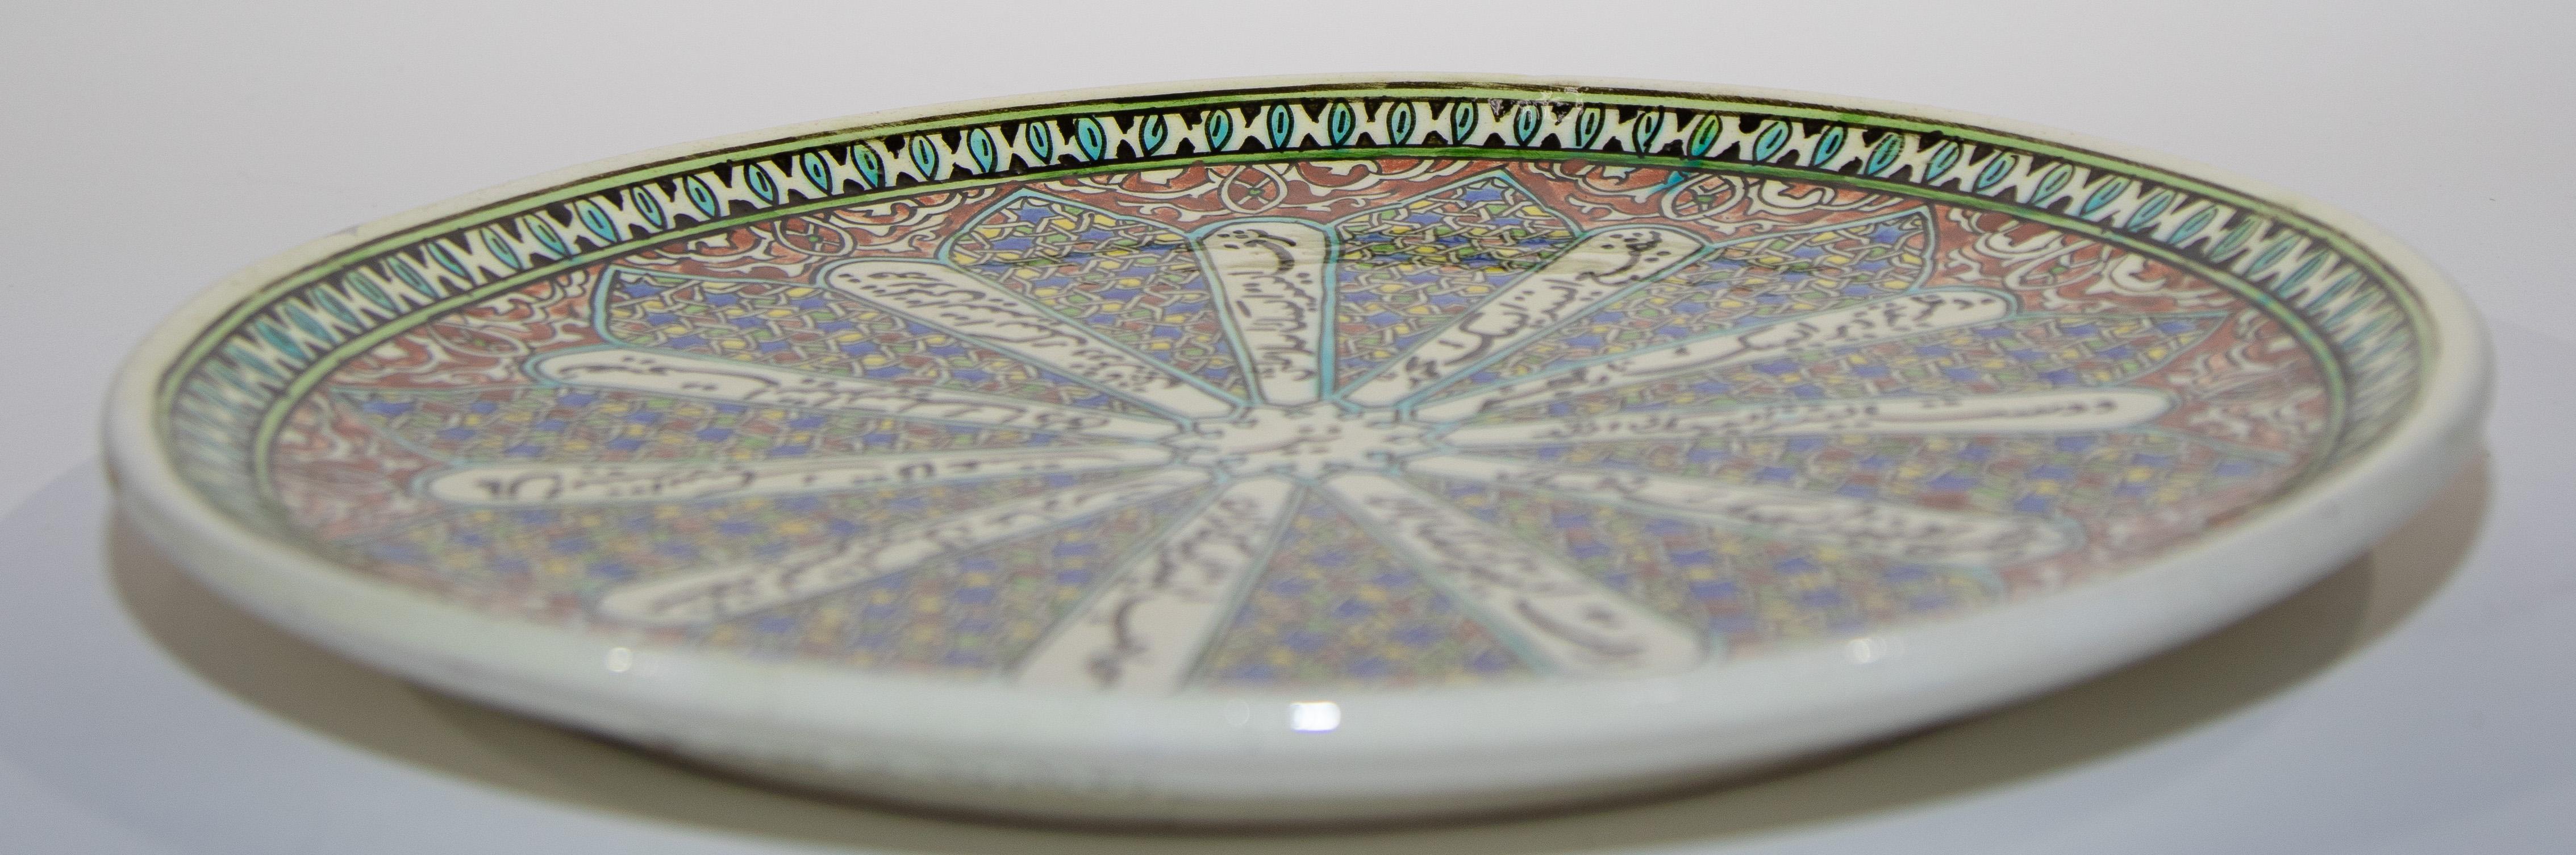 Kutahya Hand Painted Islamic Turkish Decorative Plate 1950's For Sale 3